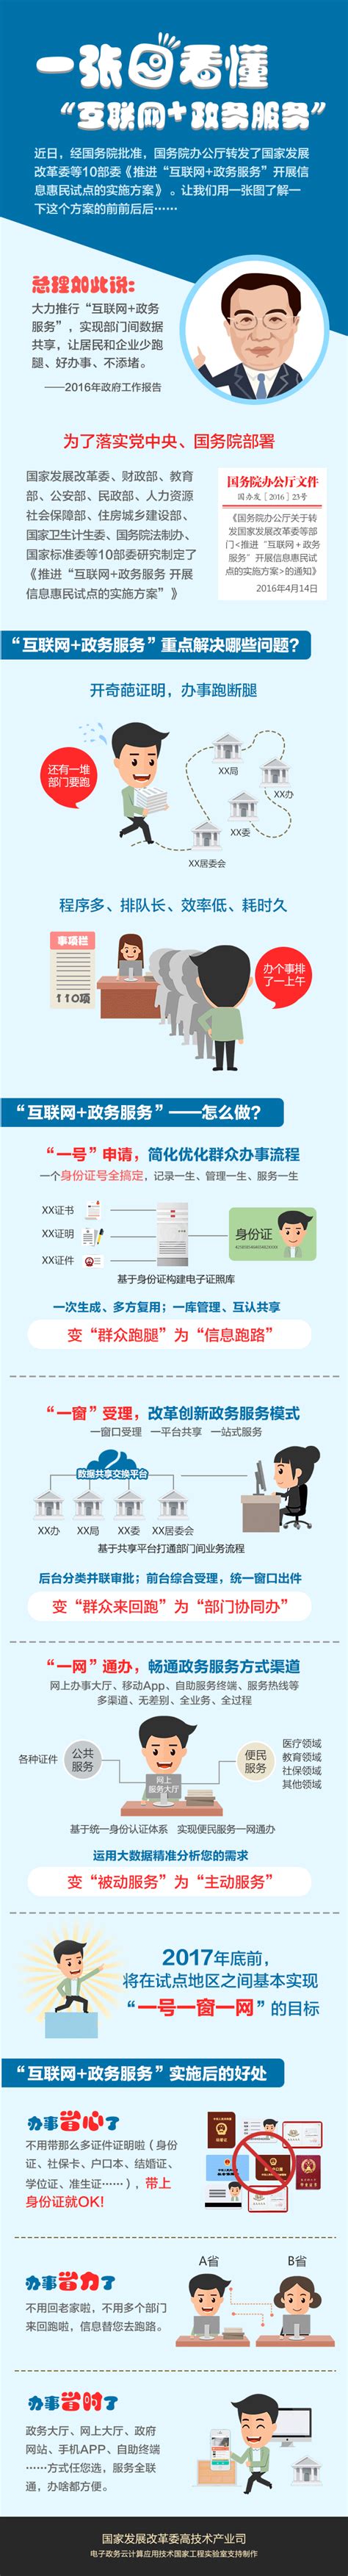 深圳市网上政务服务能力蝉联全国重点城市第一